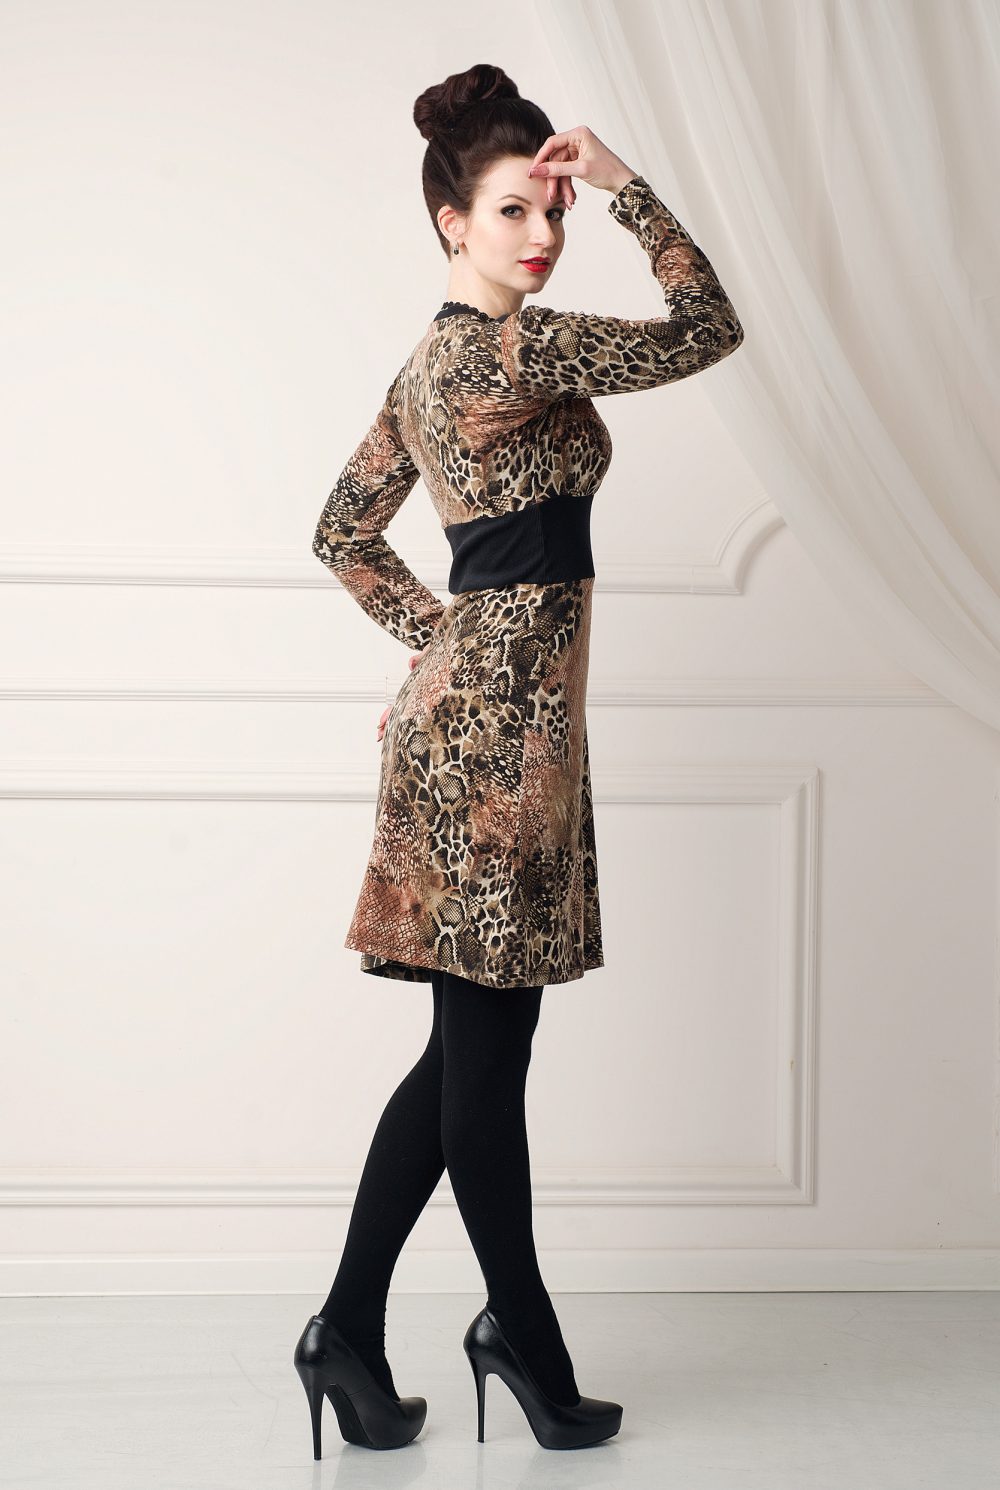 Трикотажное леопардовое платье «Хищные коготки» от дизайнера Любовь Джбааи 4